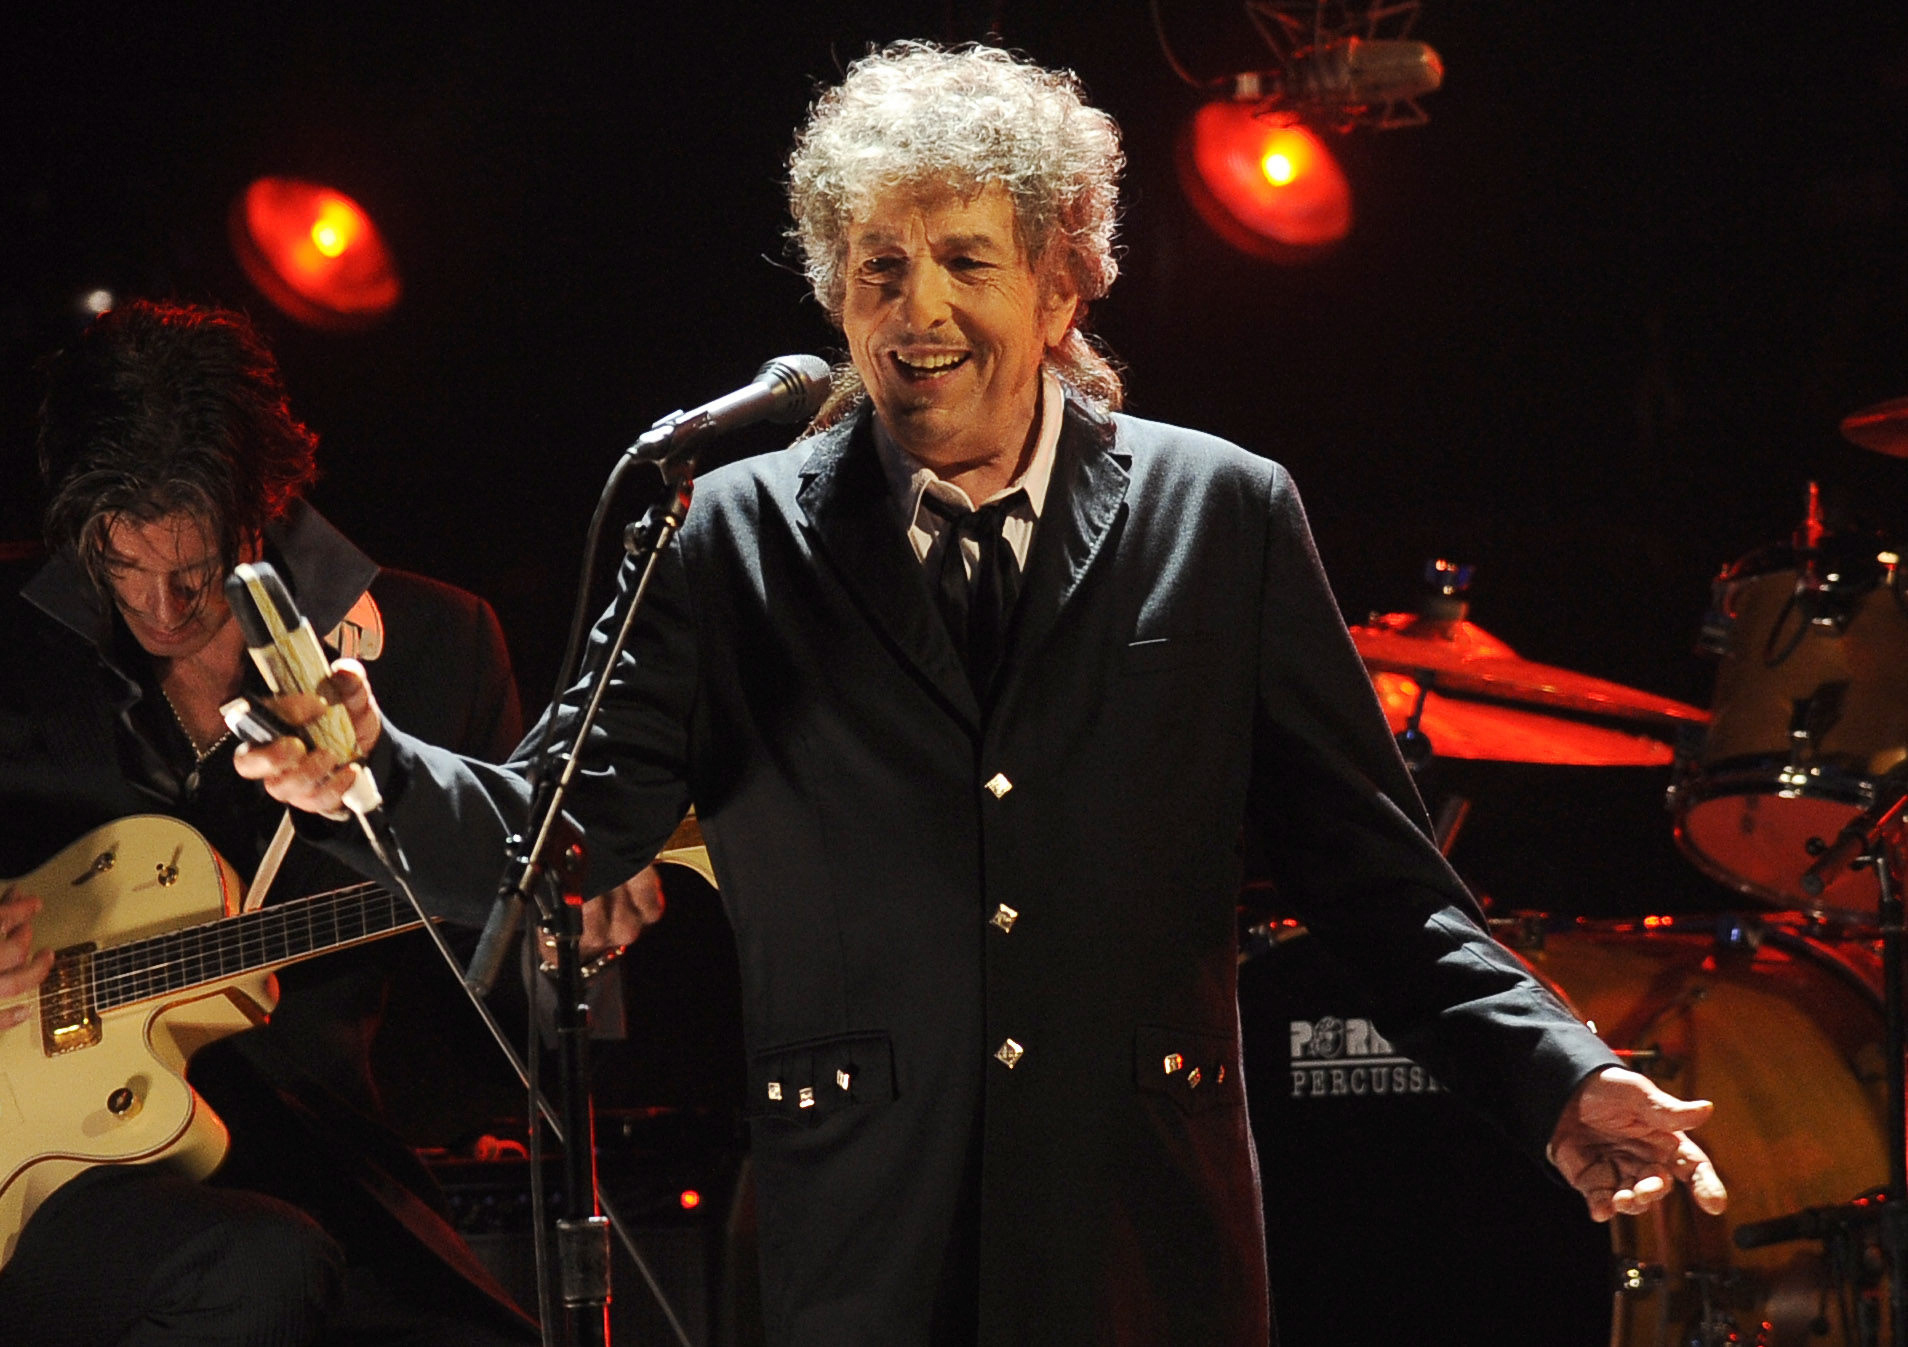 NOBEL DE LITERATURA: al cantante y compositor Bob Dylan por haber creado lo que la Academia Sueca describe como “nuevas expresiones poéticas dentro de la gran tradición de la canción estadounidense”.